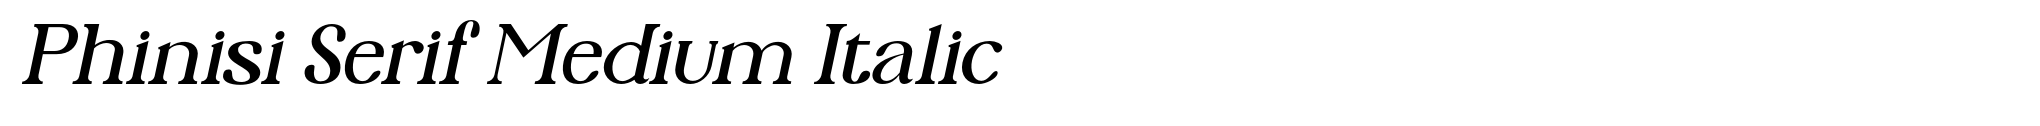 Phinisi Serif Medium Italic image